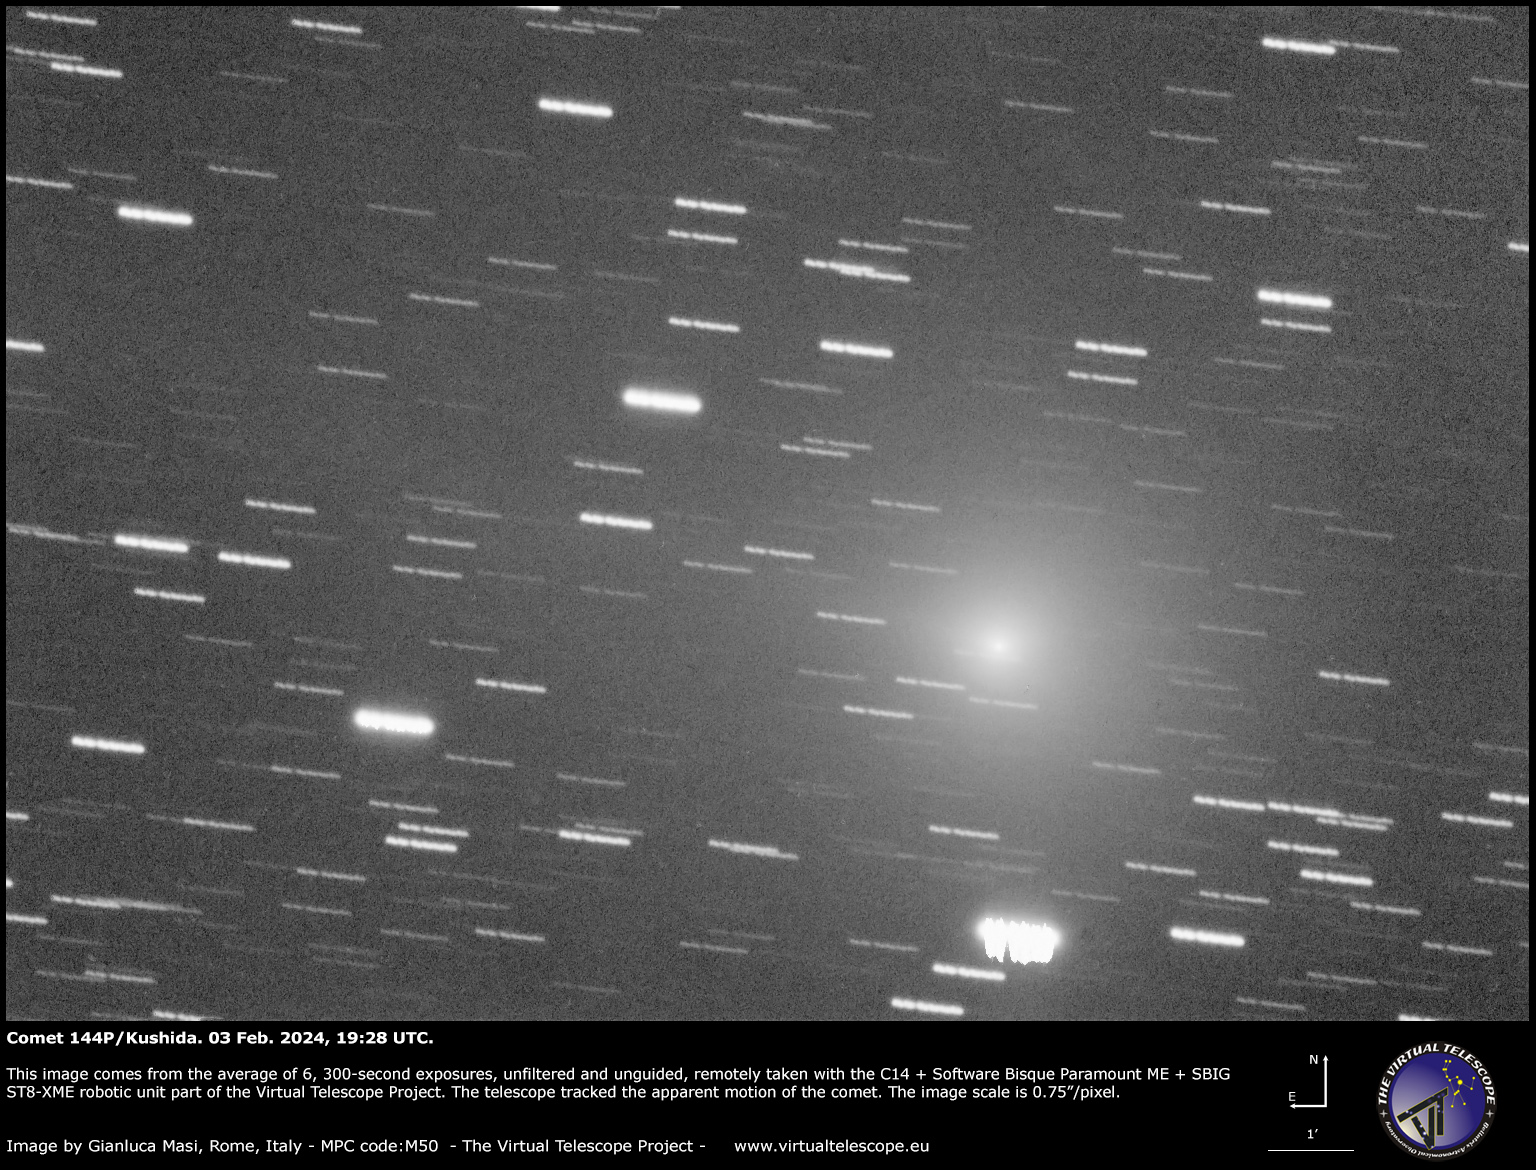 Comet 144P/Kushida: 3 Feb. 2024